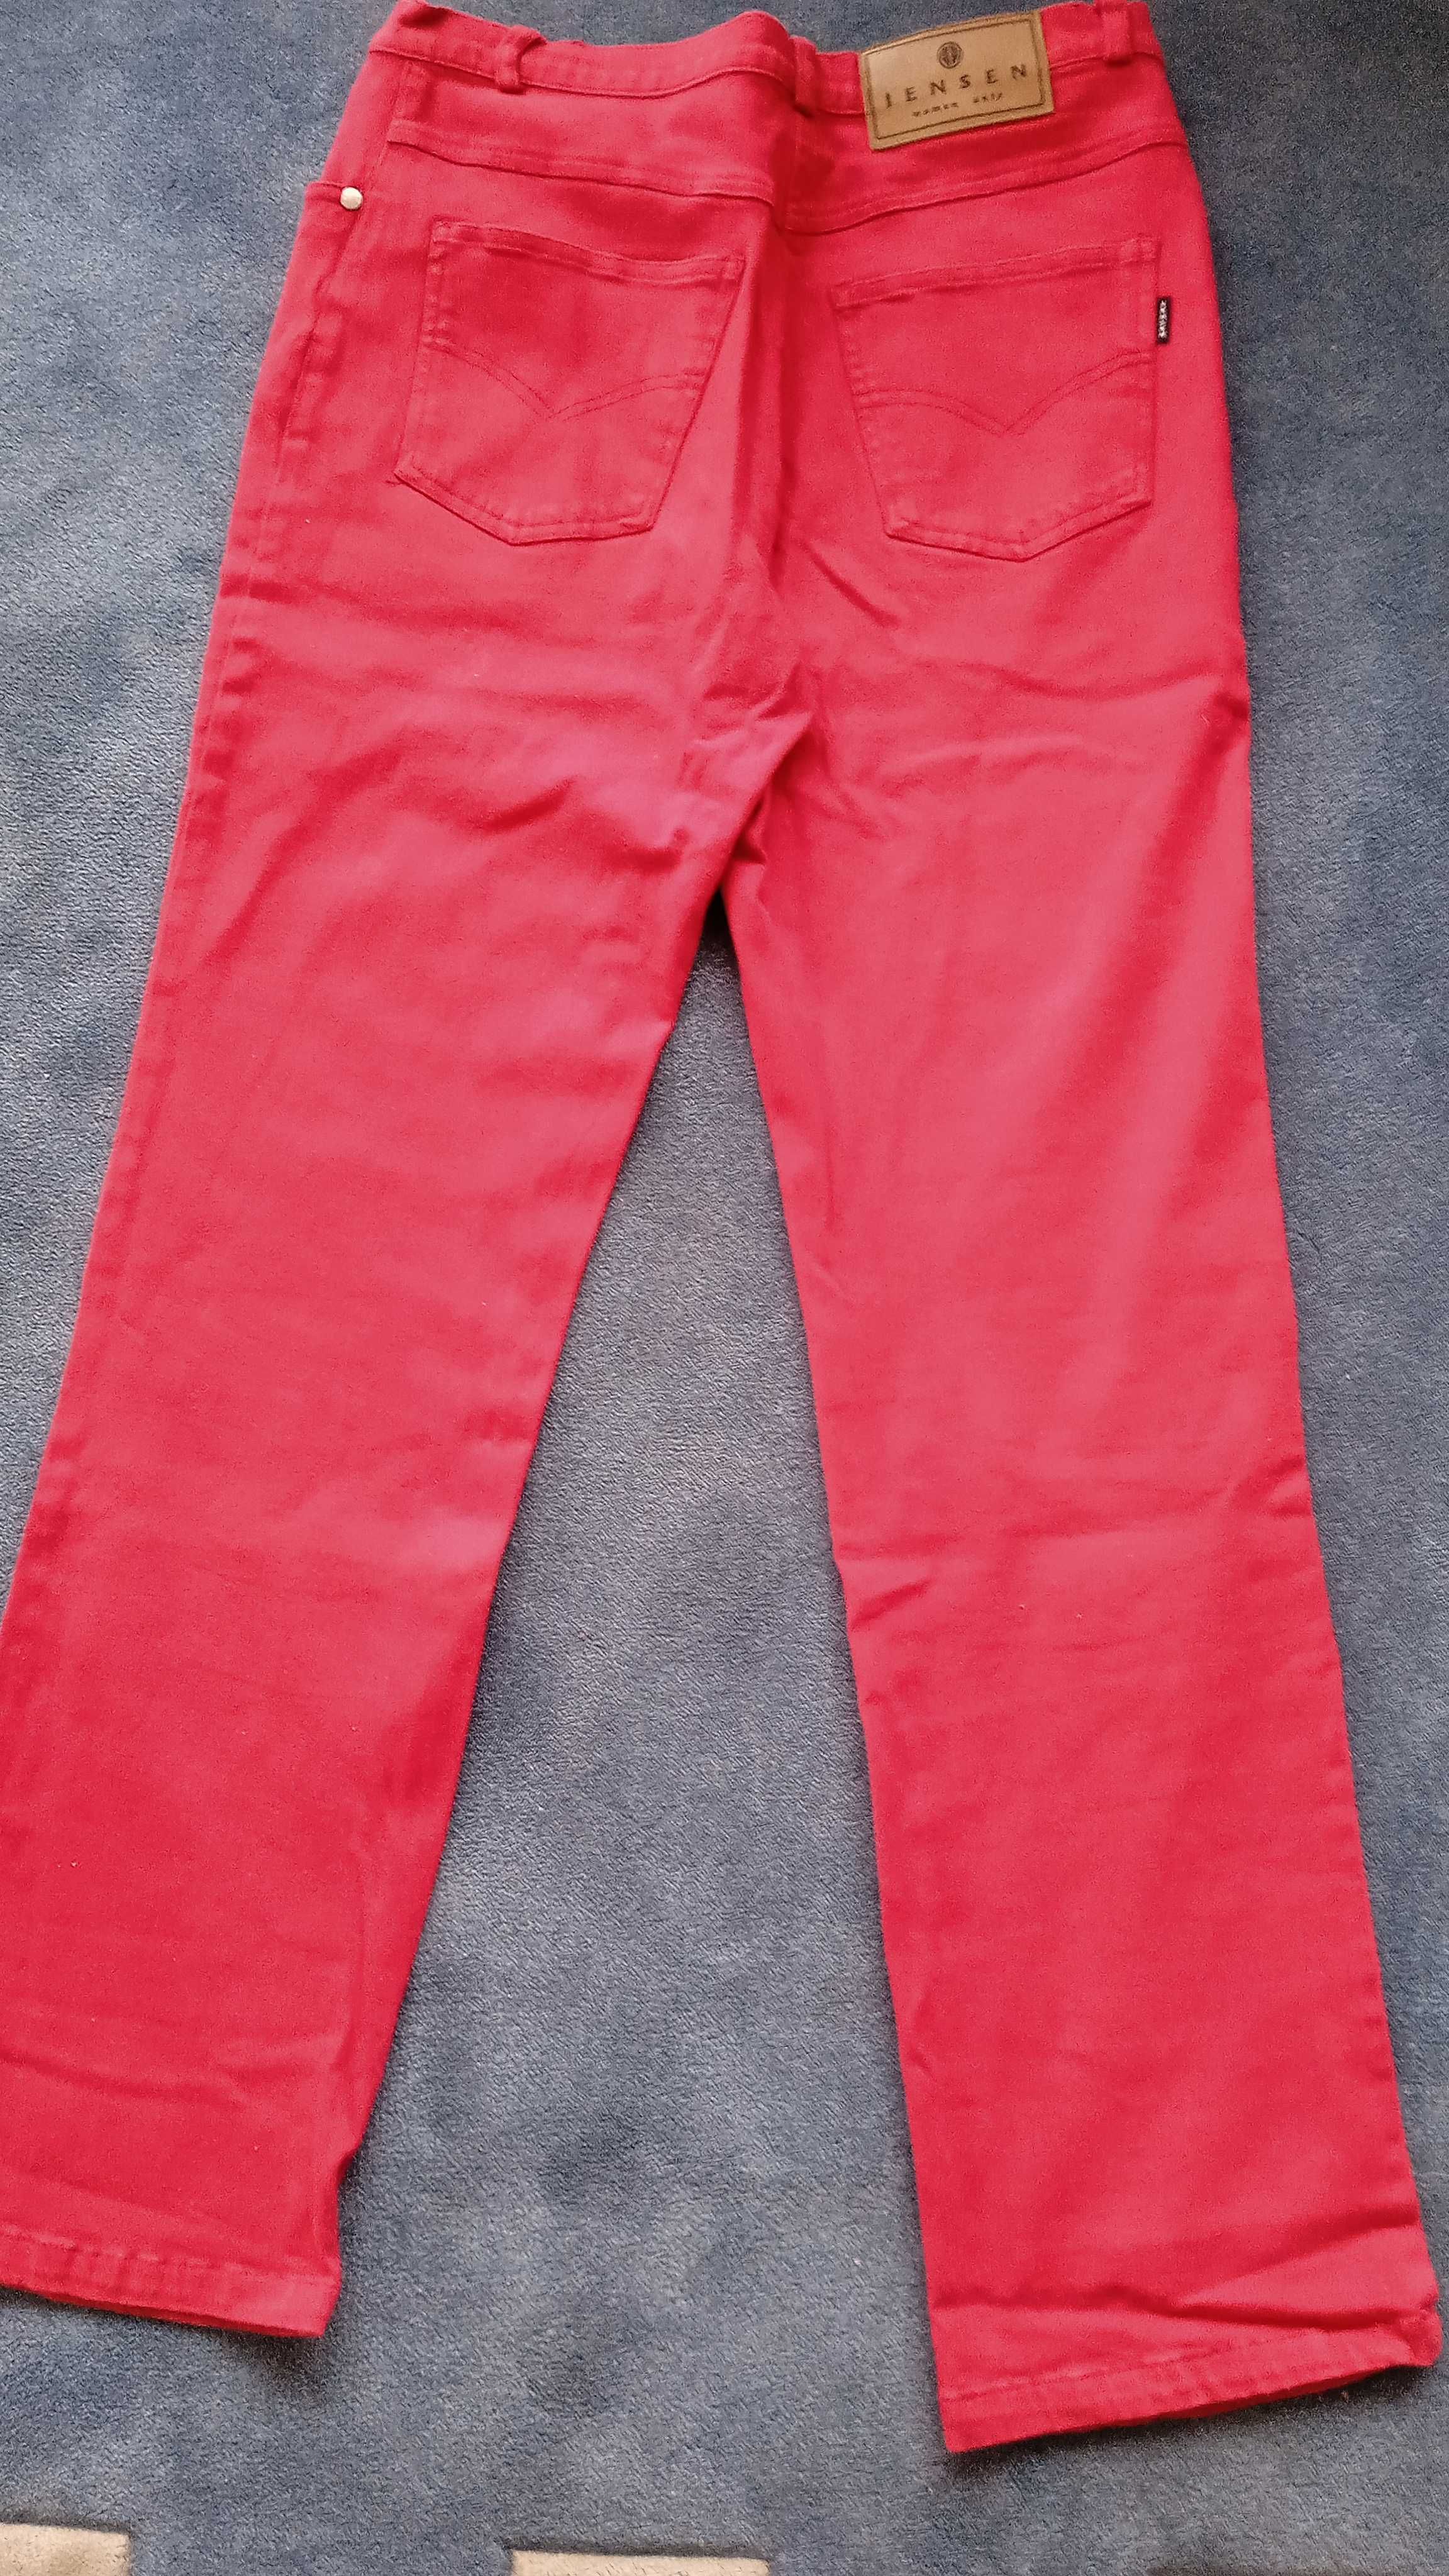 Spodnie damskie JEANSEN, rozmiar 38, czerwone.